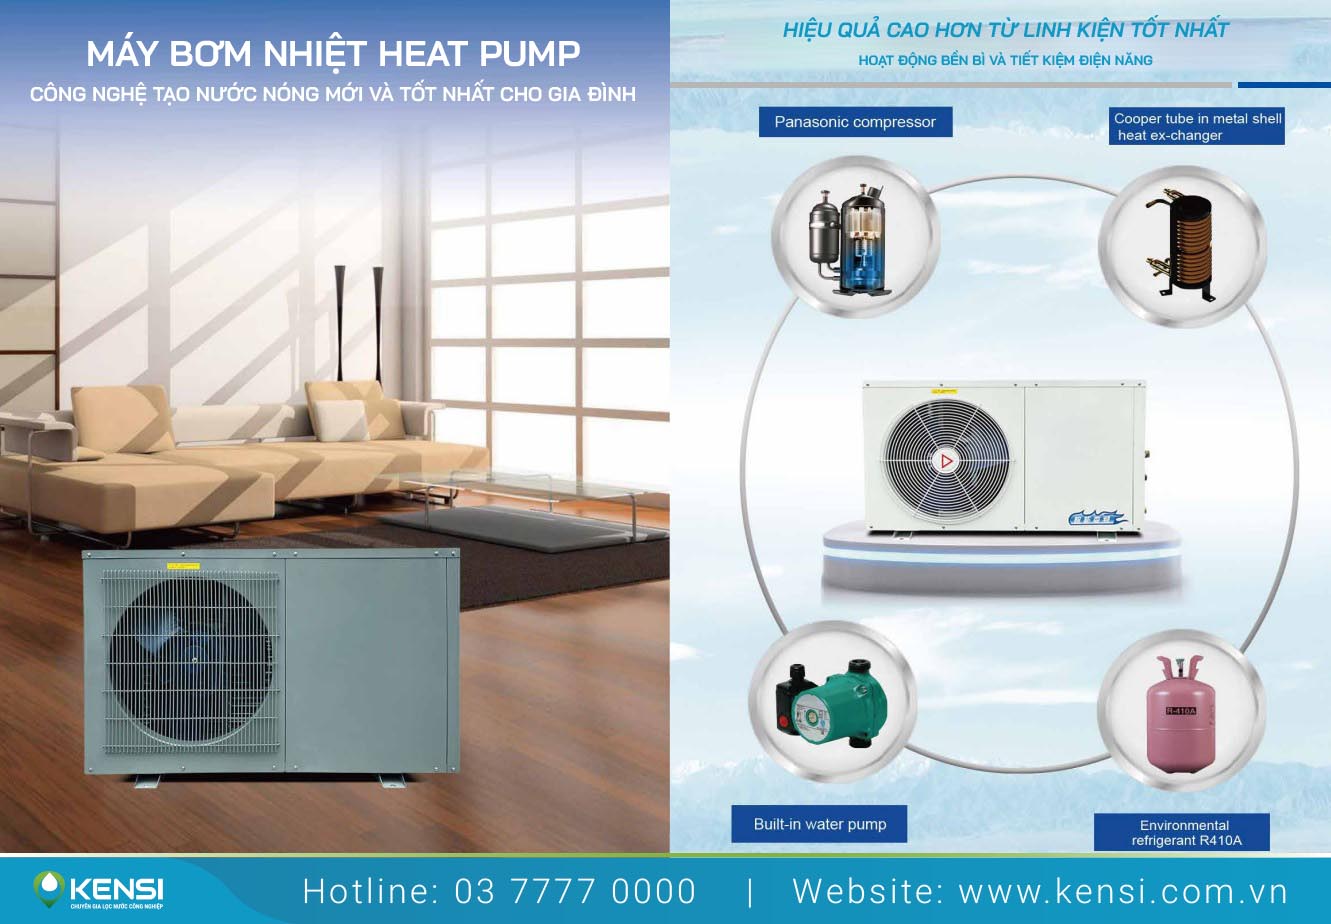 Heat Pump máy bơm nhiệt tạo nước nóng dùng cho gia đình